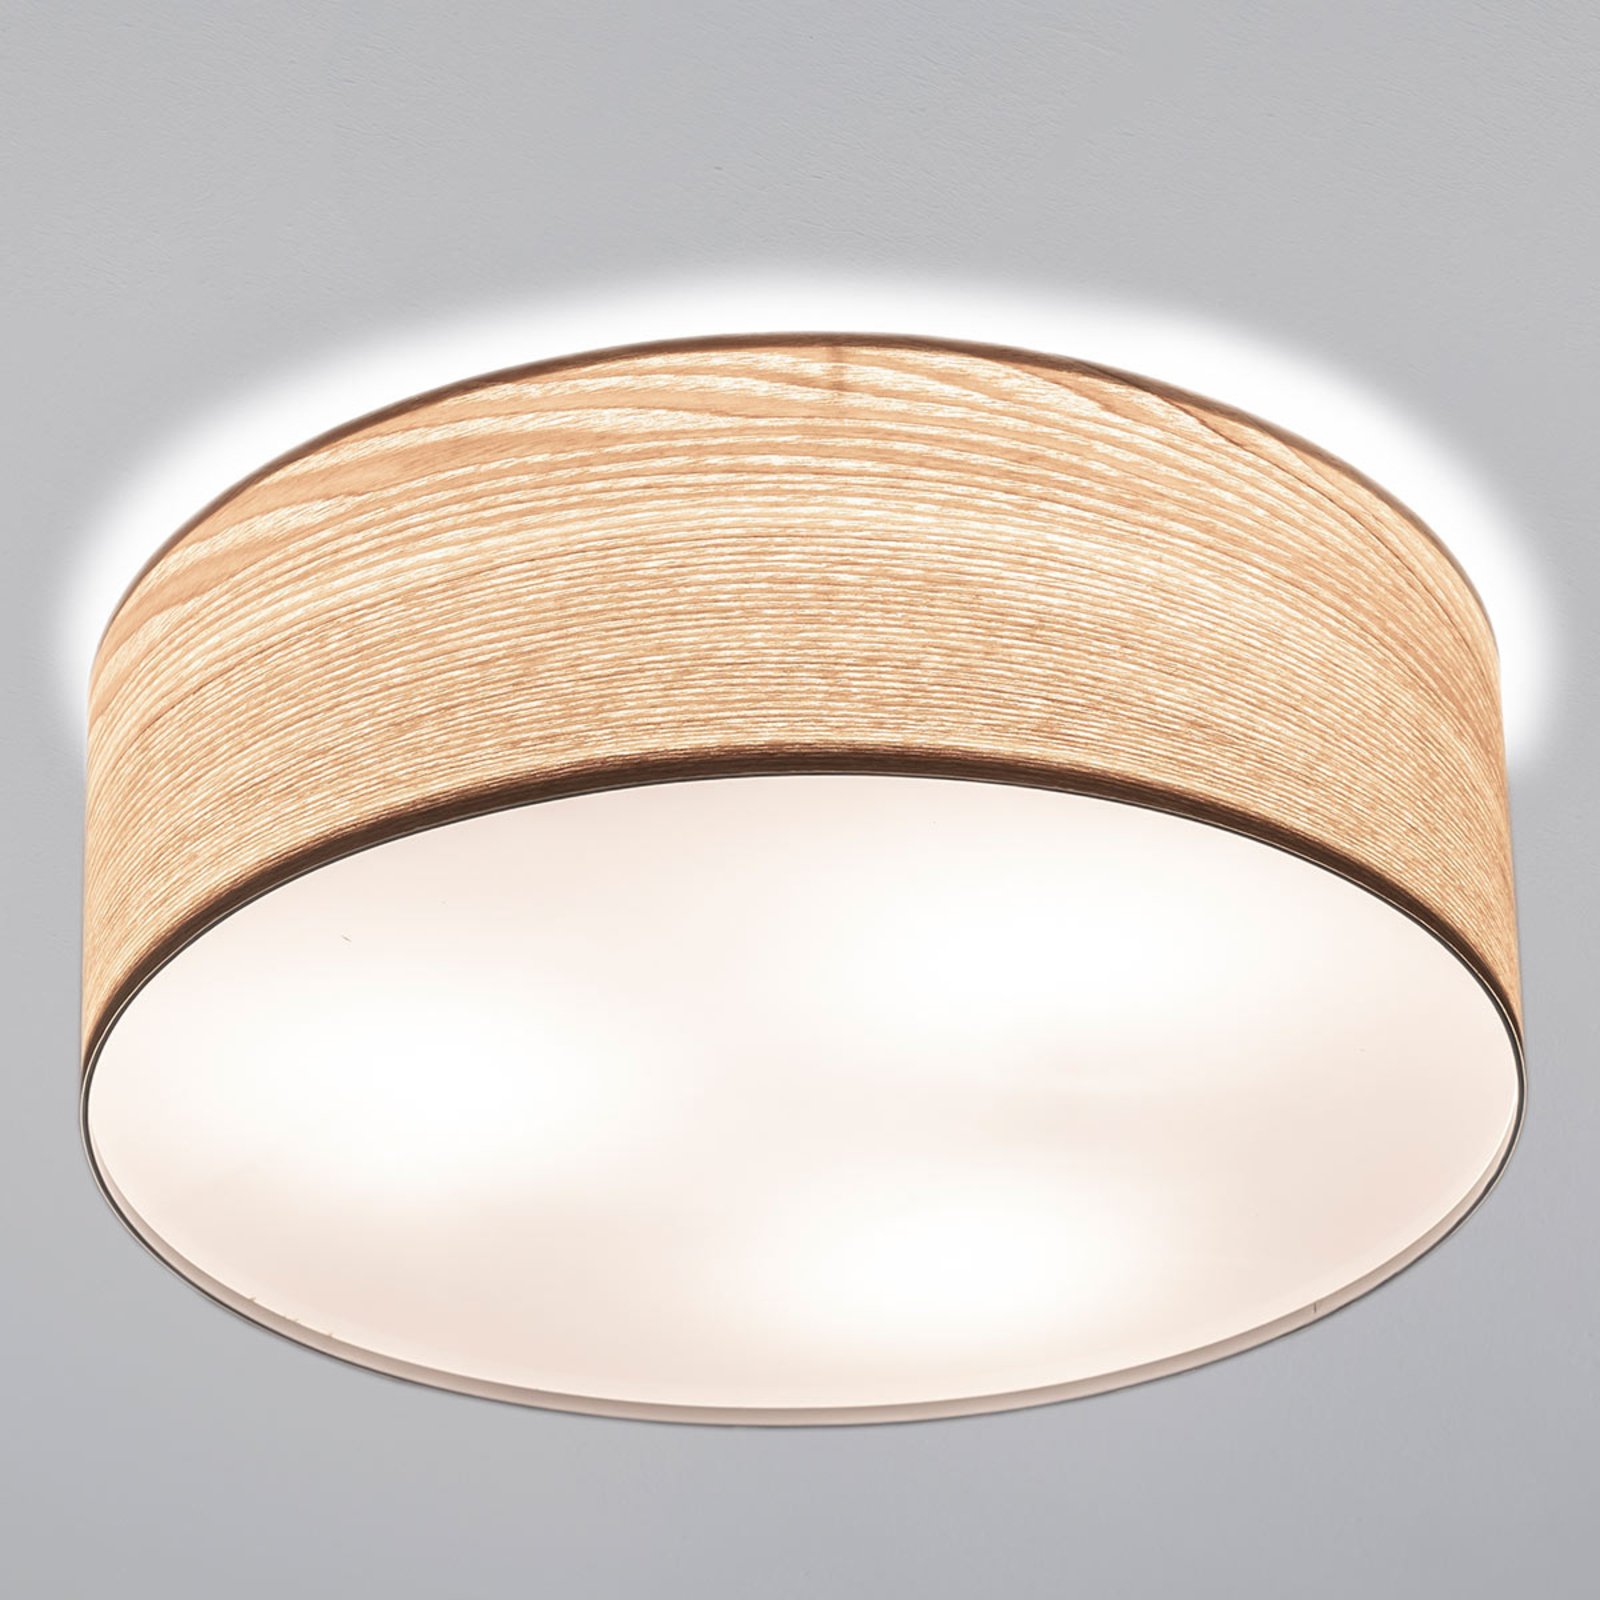 Paulmann Liska ceiling lamp in light-coloured wood